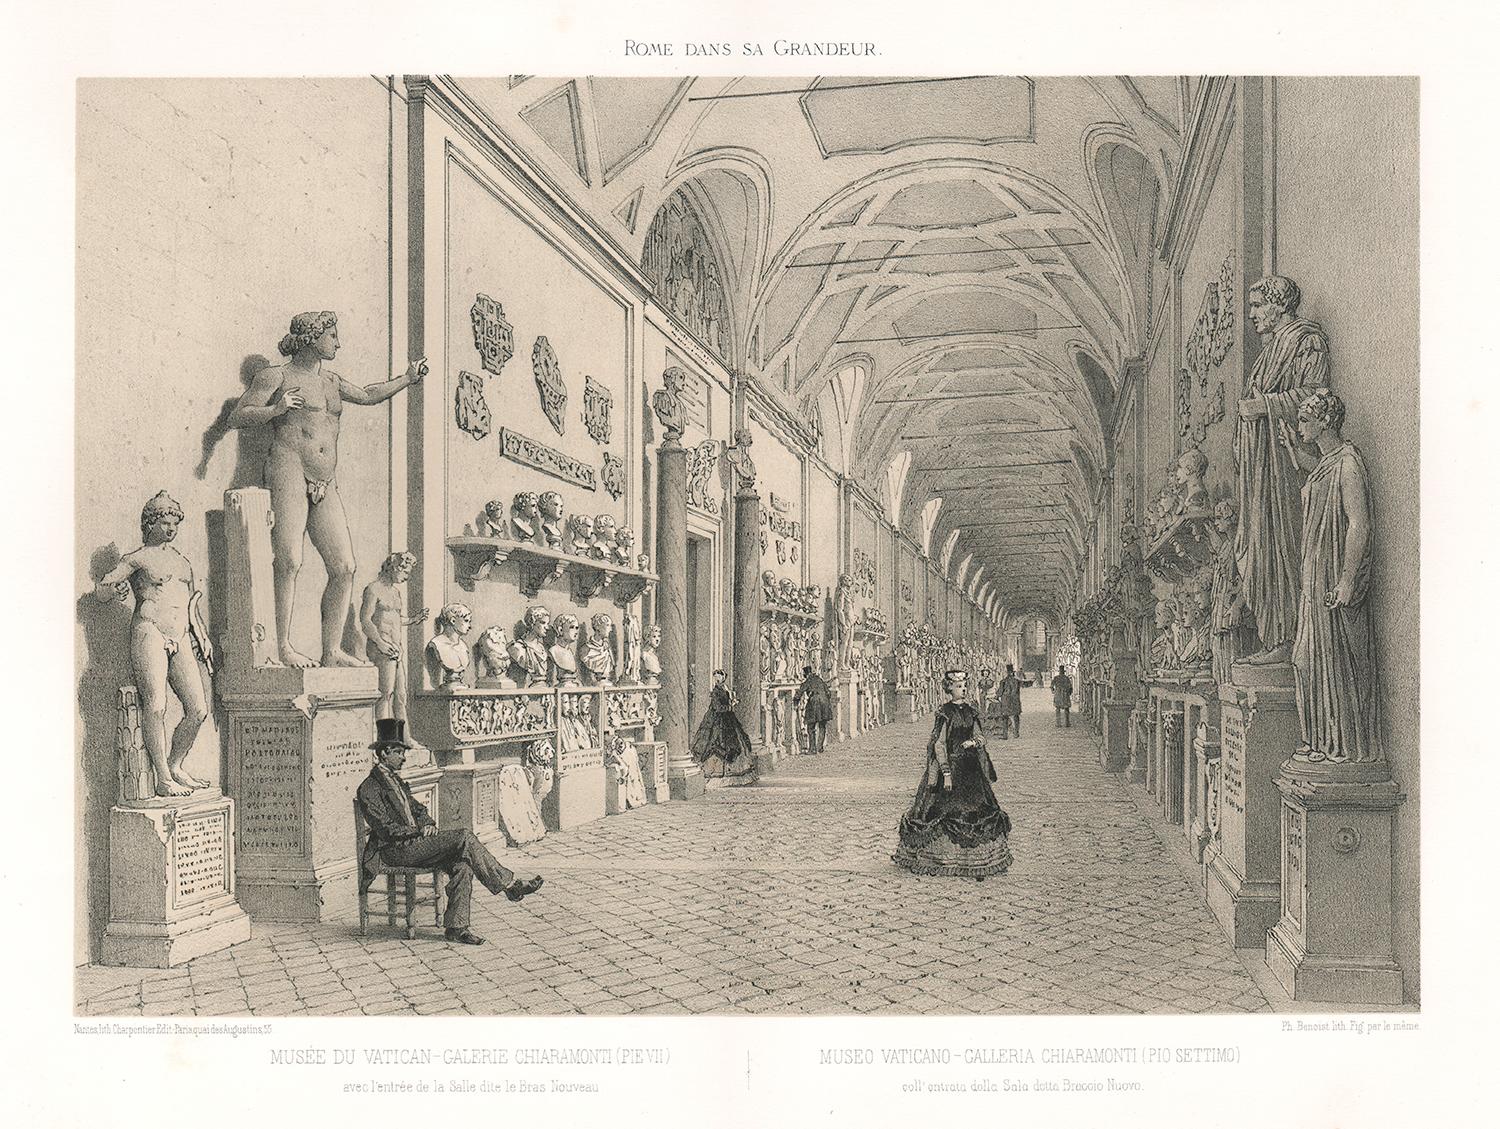 Galerie Chiaramonti, Vatican, Rome, Italie Sculpture classique. Lithographie, 1870